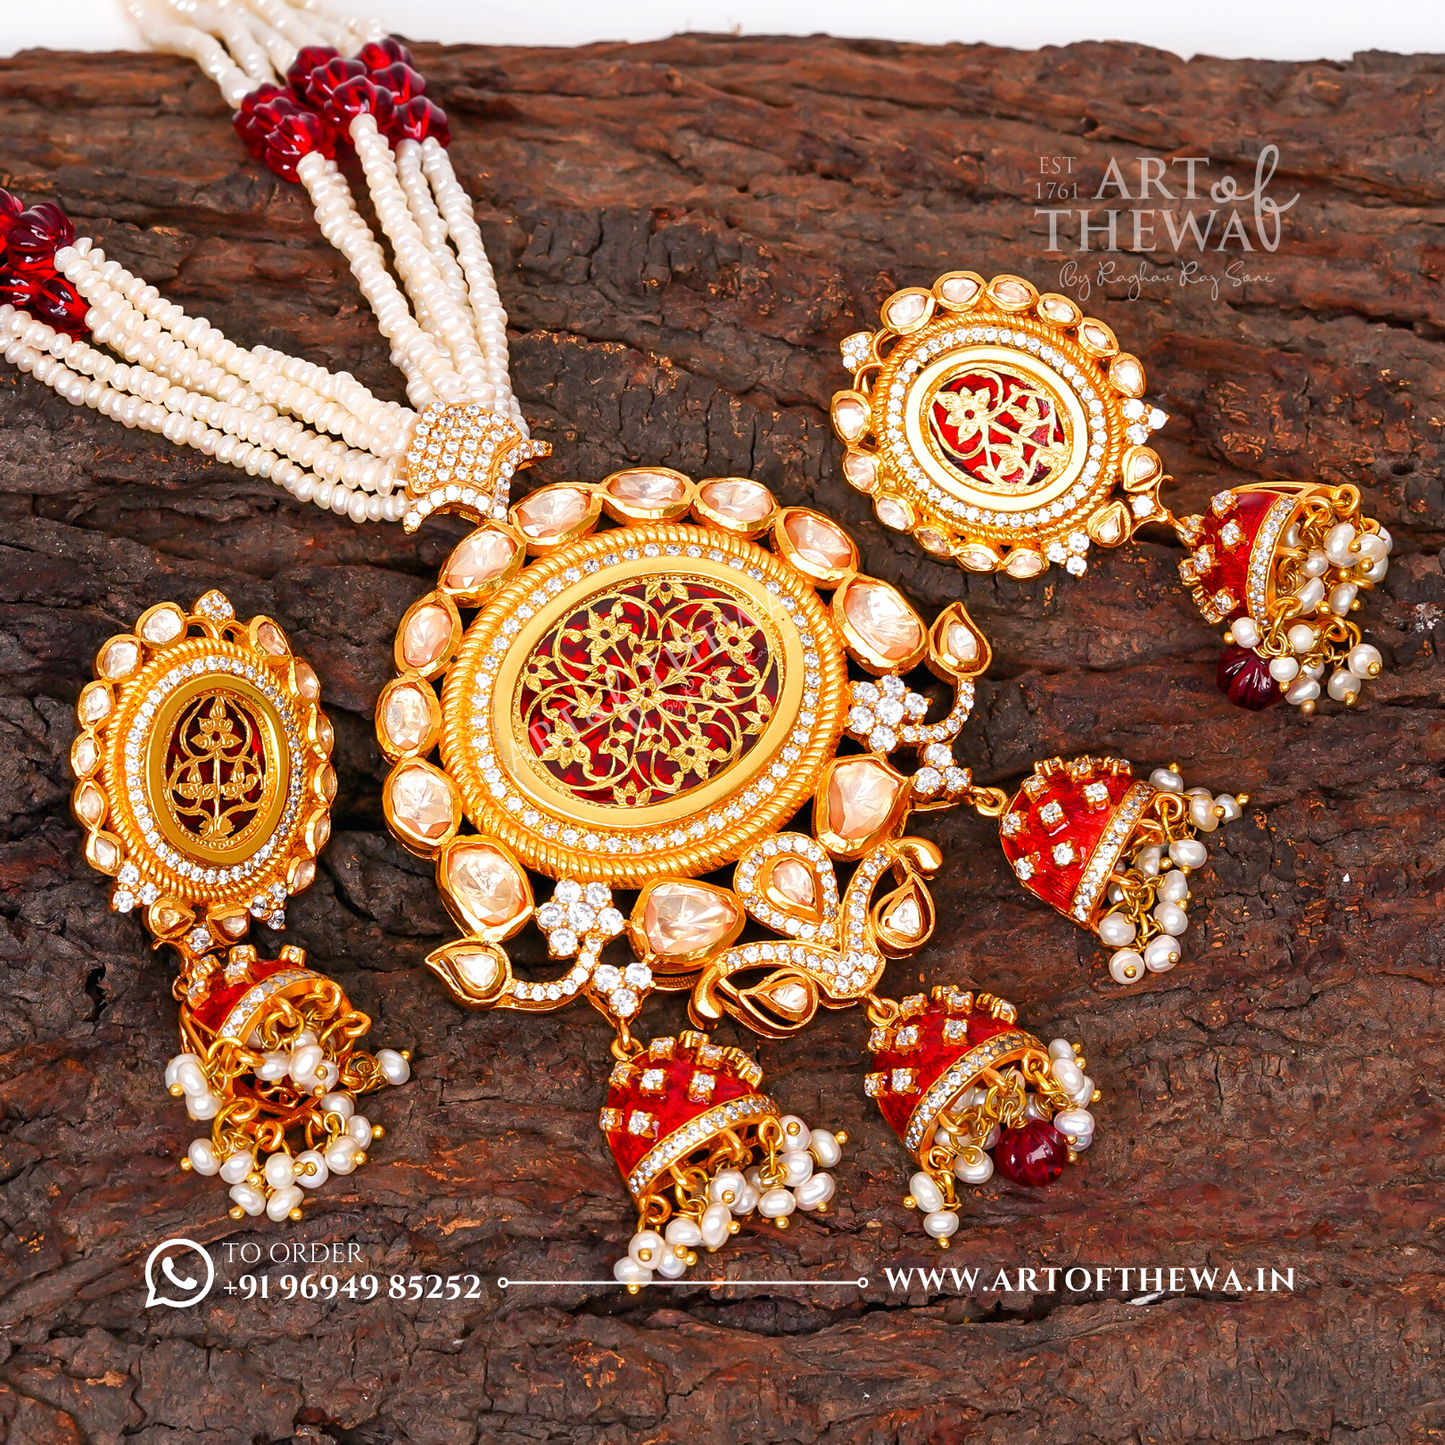 Regal Alekhya Thewa Art Necklace Set with Jhumki - A Majestic Statement of Opulence